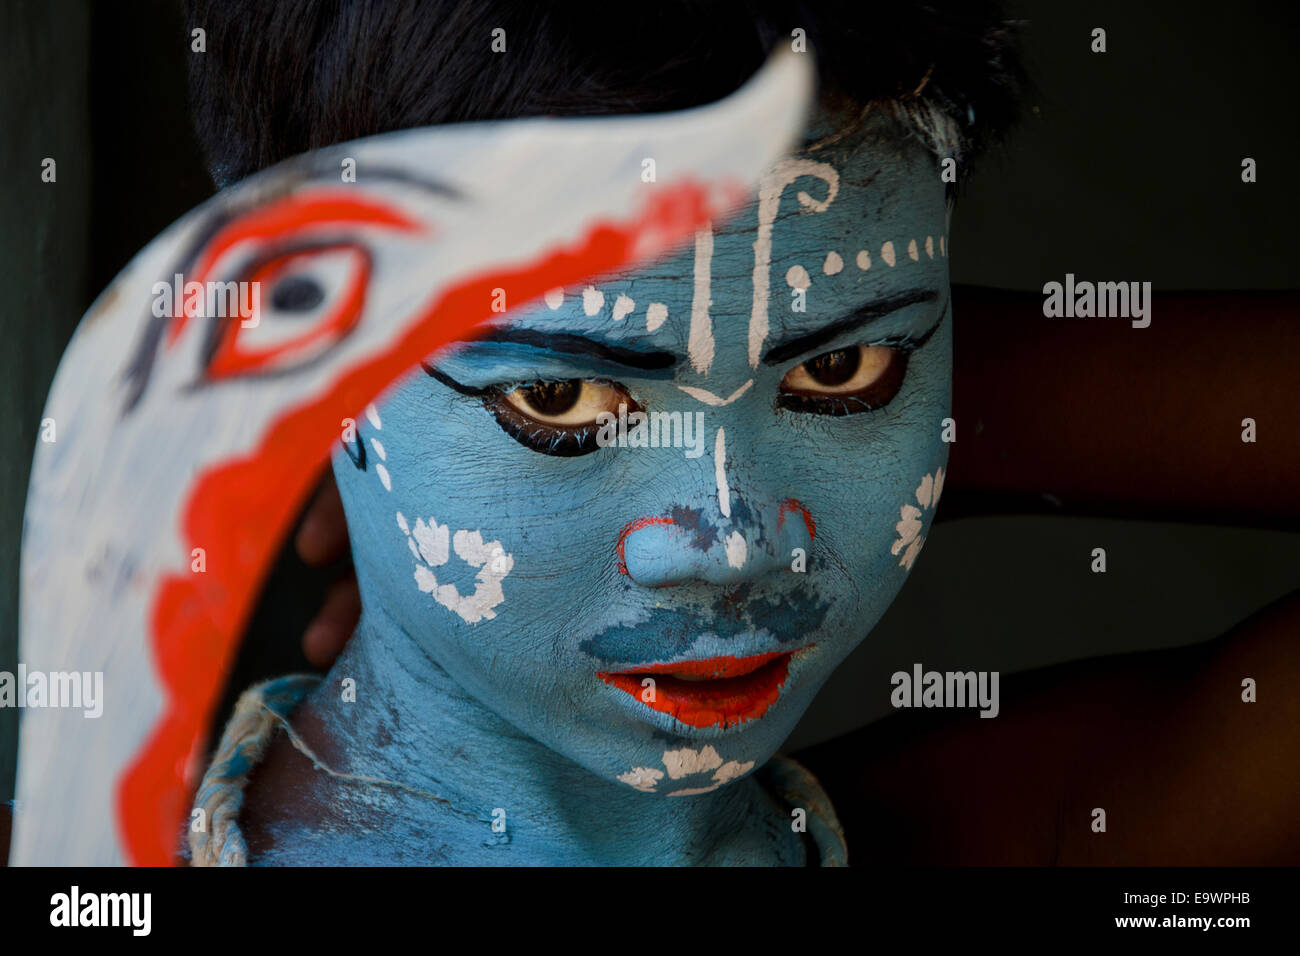 Boy holding sword with painted faces celebrating Gajan festival, Kolkata, West Bengal, India Stock Photo